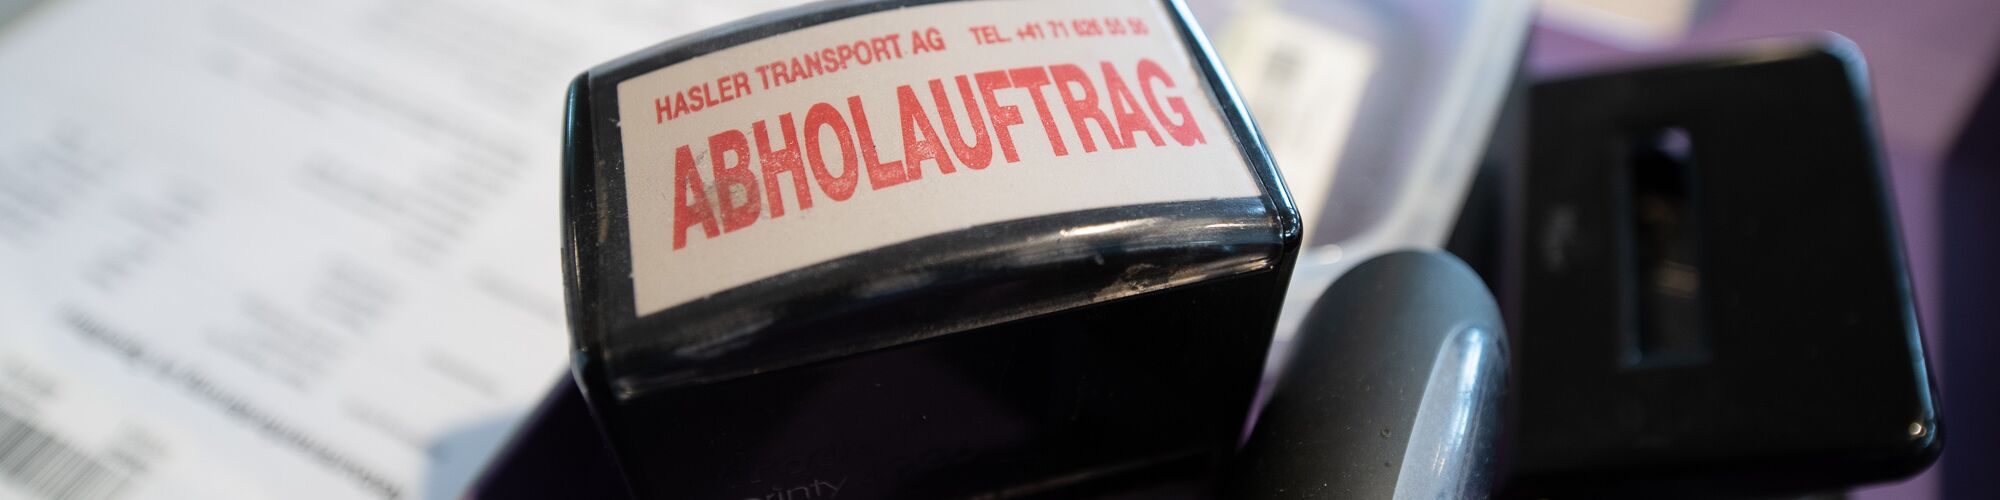 HASLER TRANSPORT AG - Abholauftrag Stempel